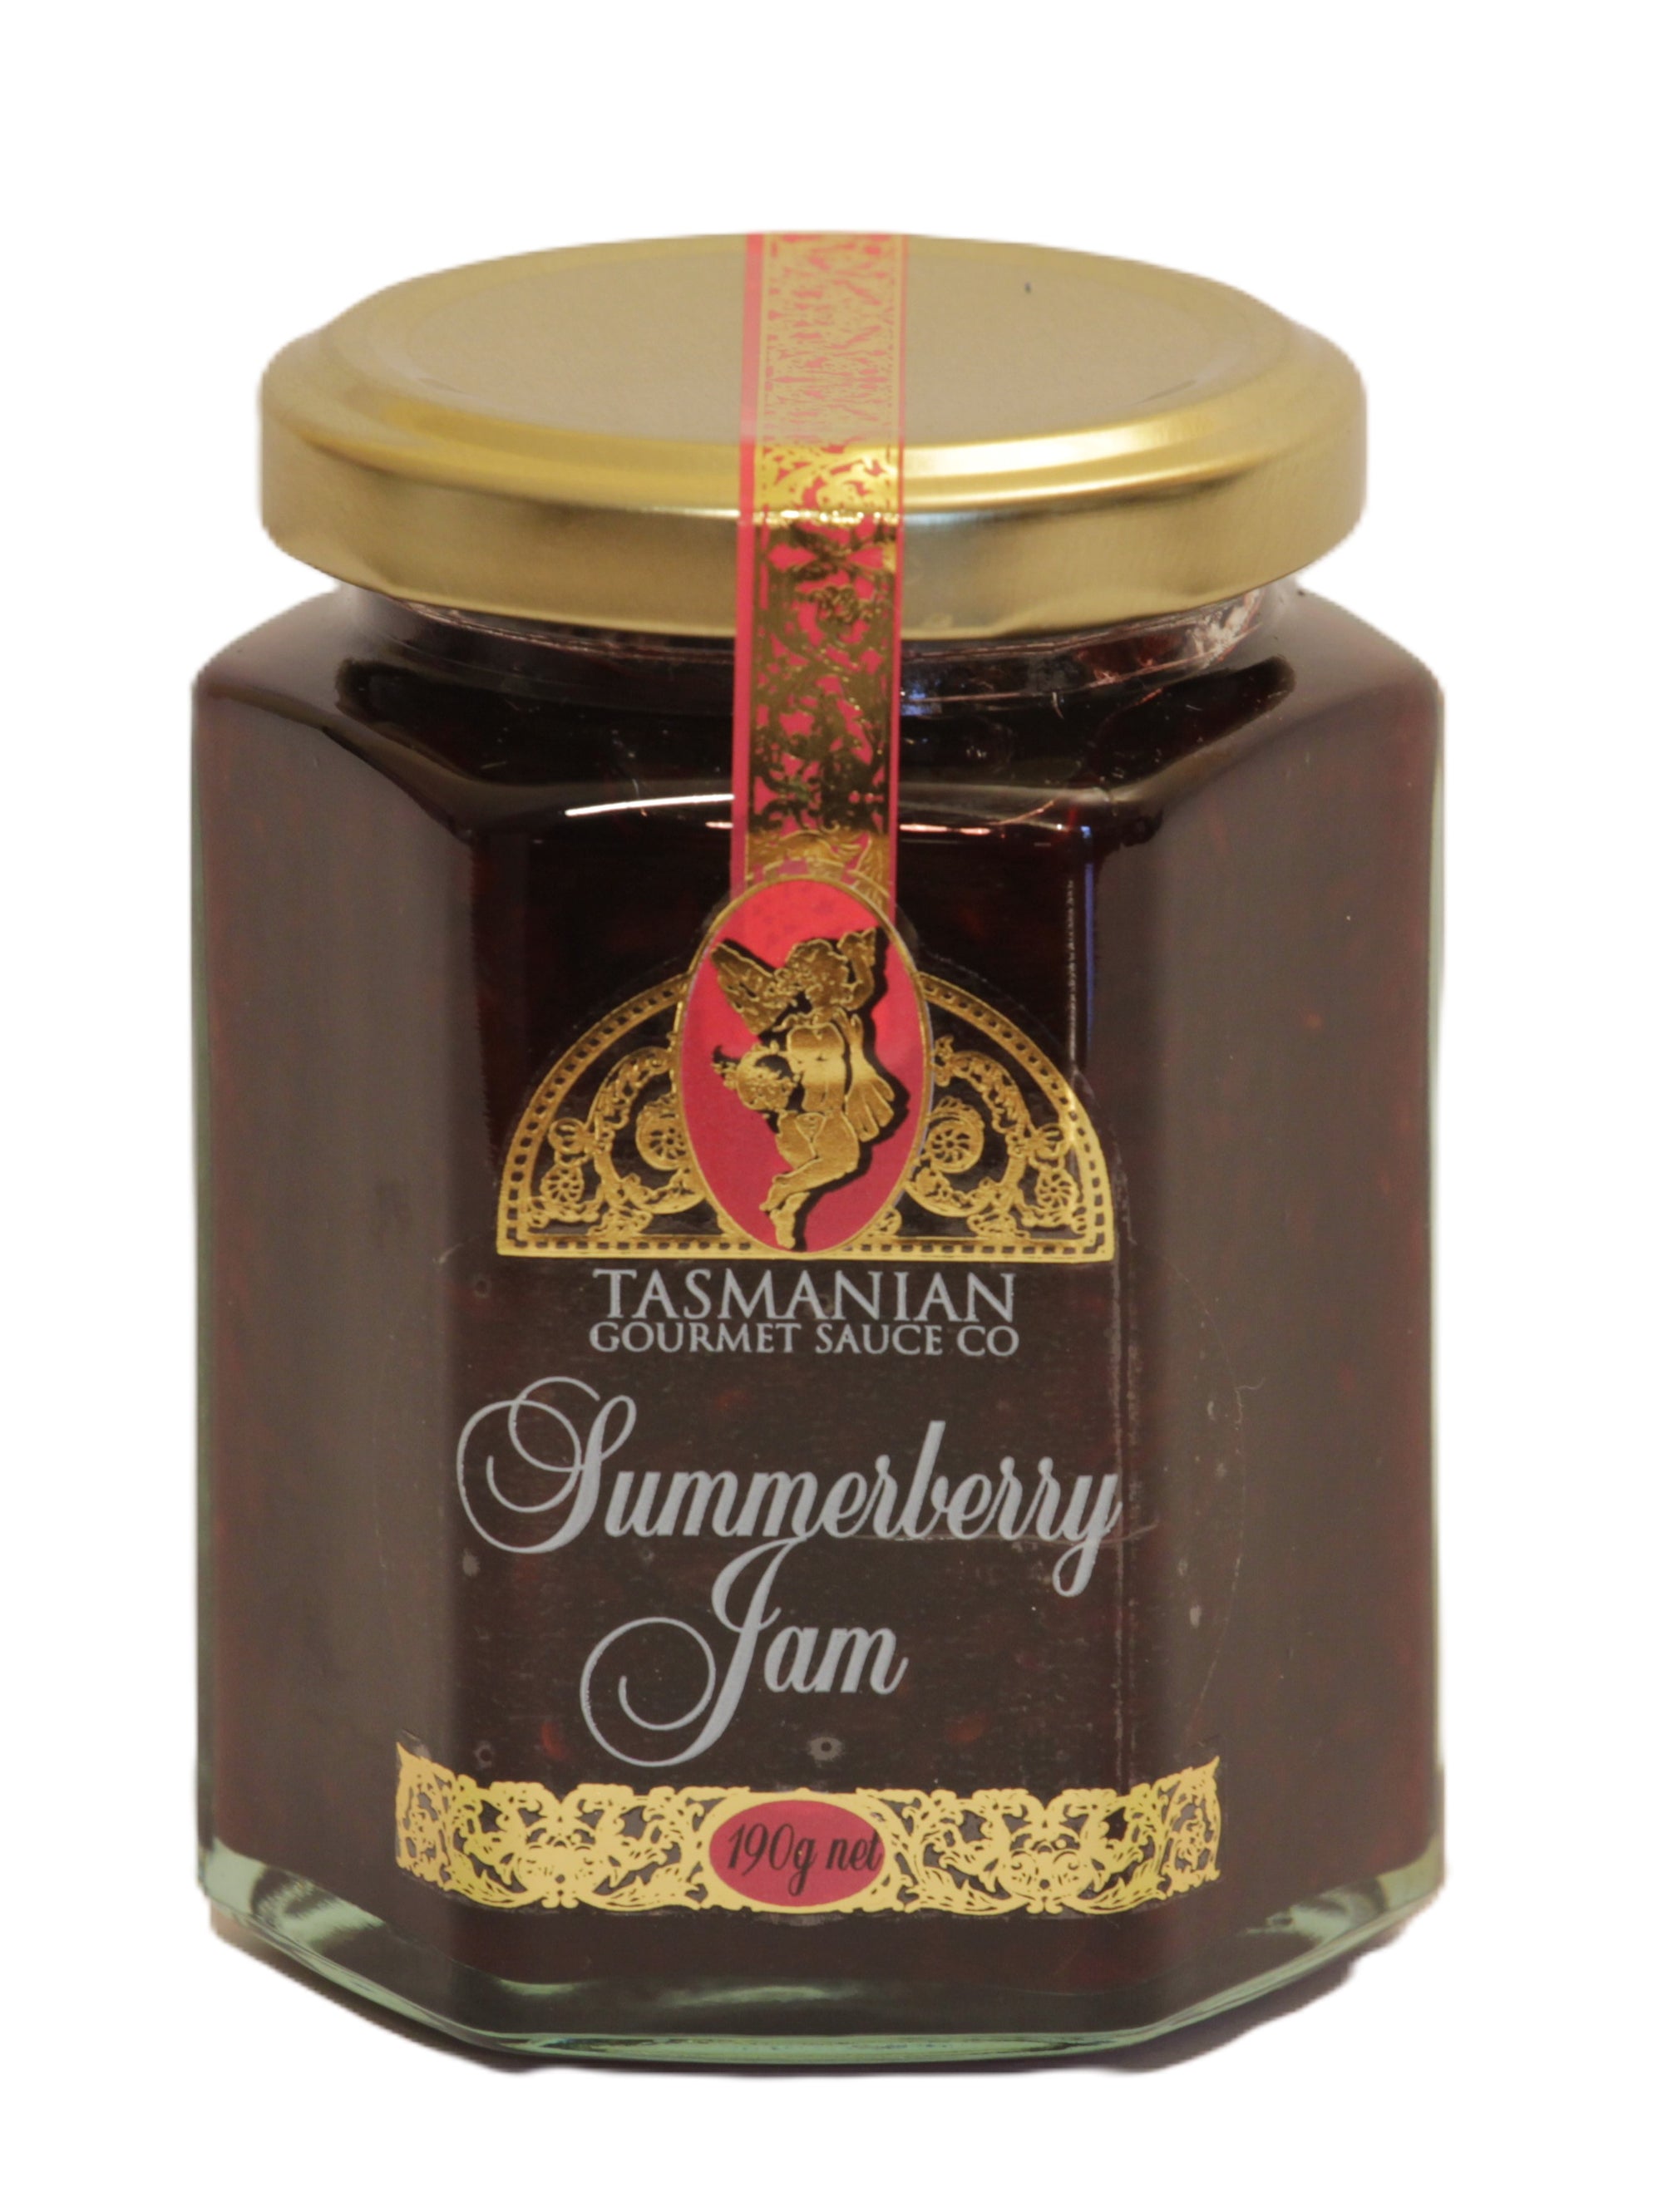 Tas Gourmet Sauce Co Summerberry Jam 190g